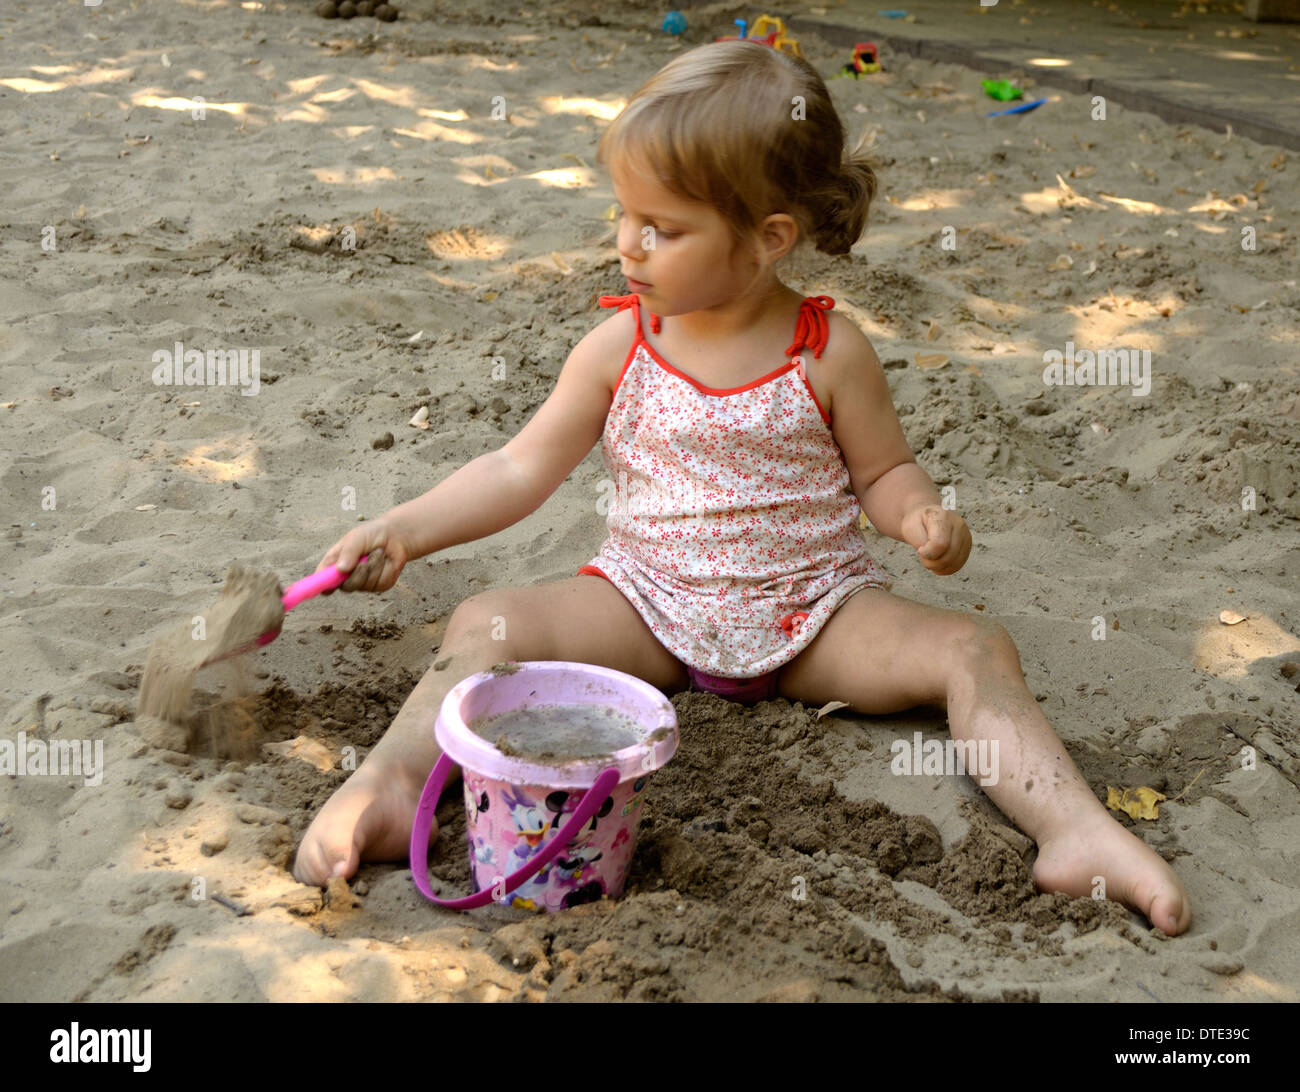 Fillette de trois ans jouant dans un bac à sable Banque D'Images